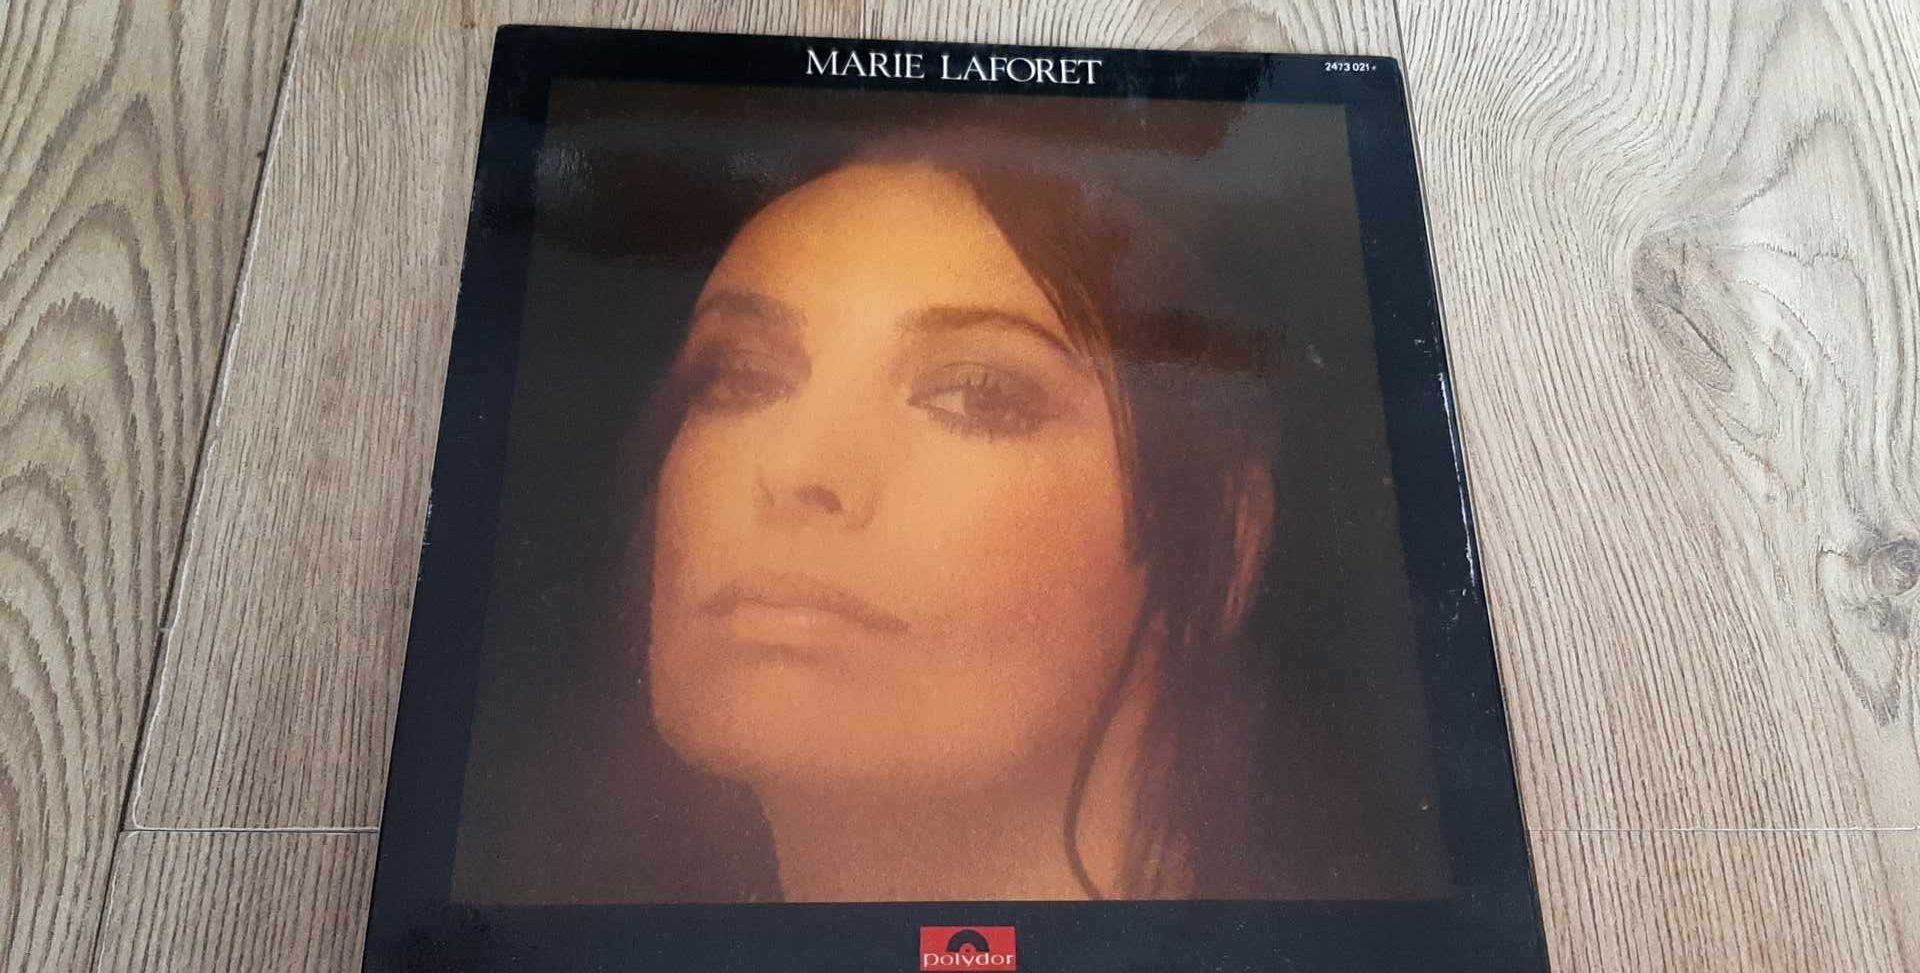 Marie Laforet - płyta winylowa